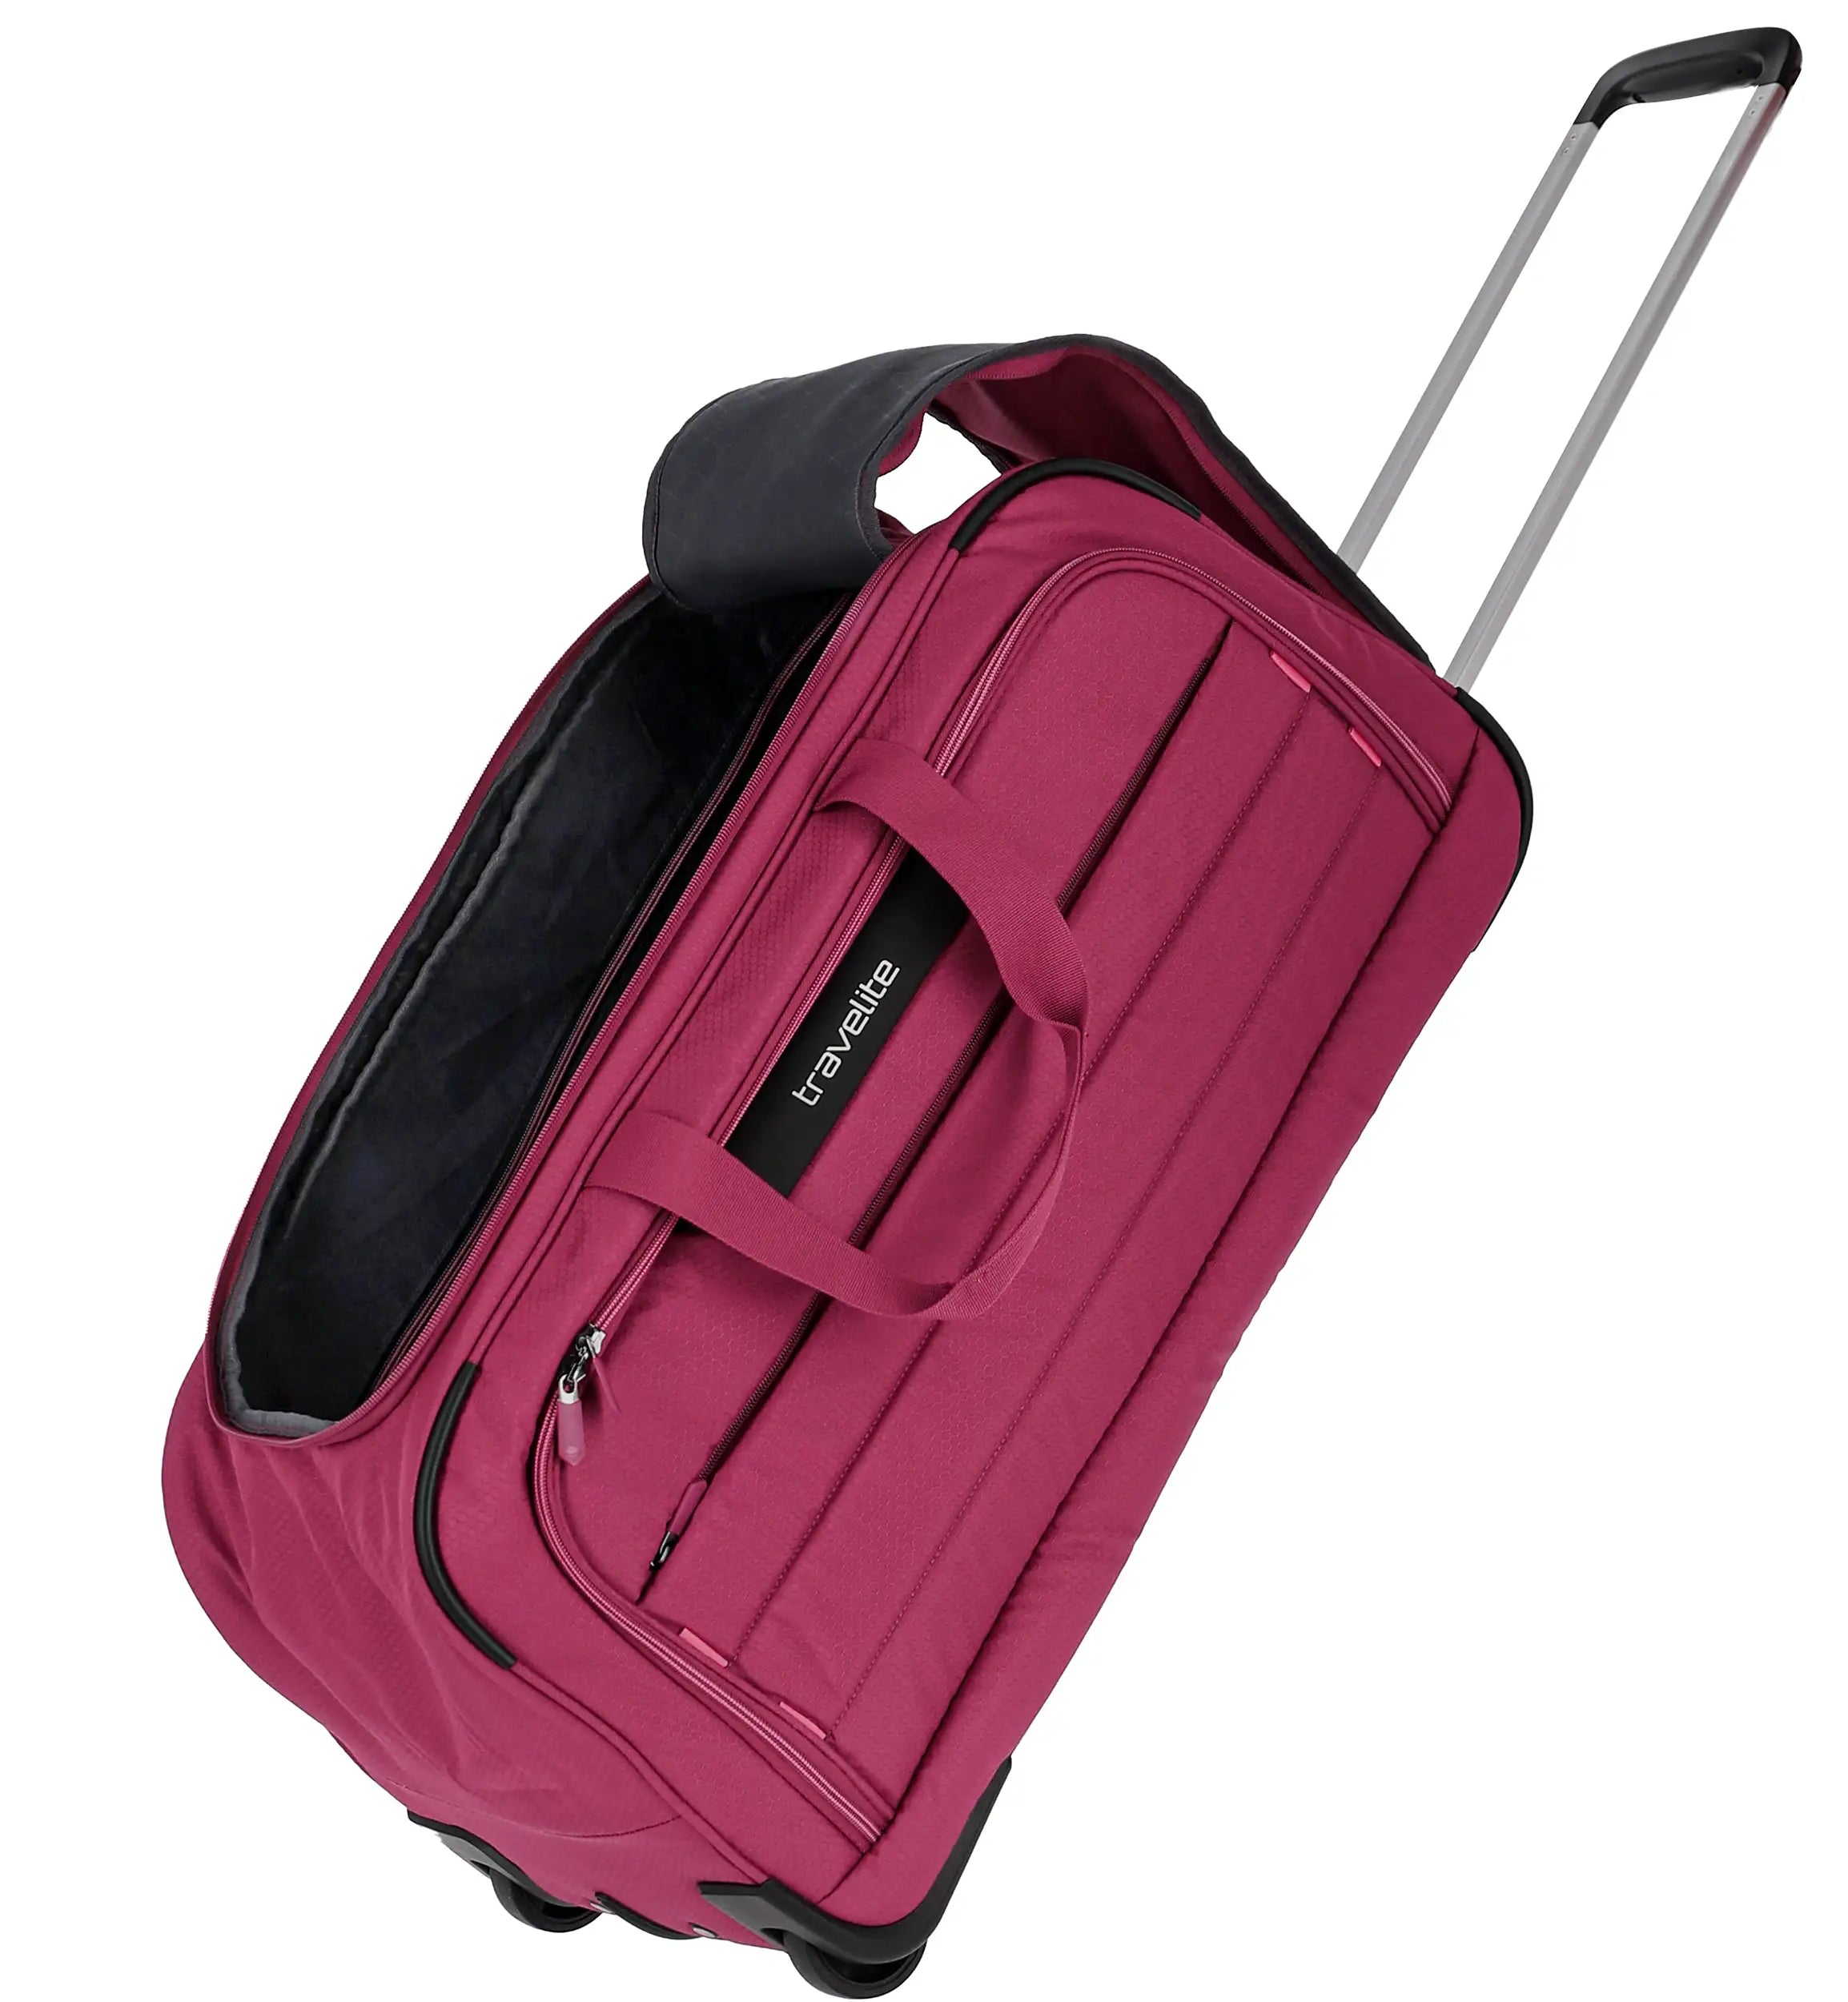 Travelite Skaii roller travel bag 65 cm - evening red